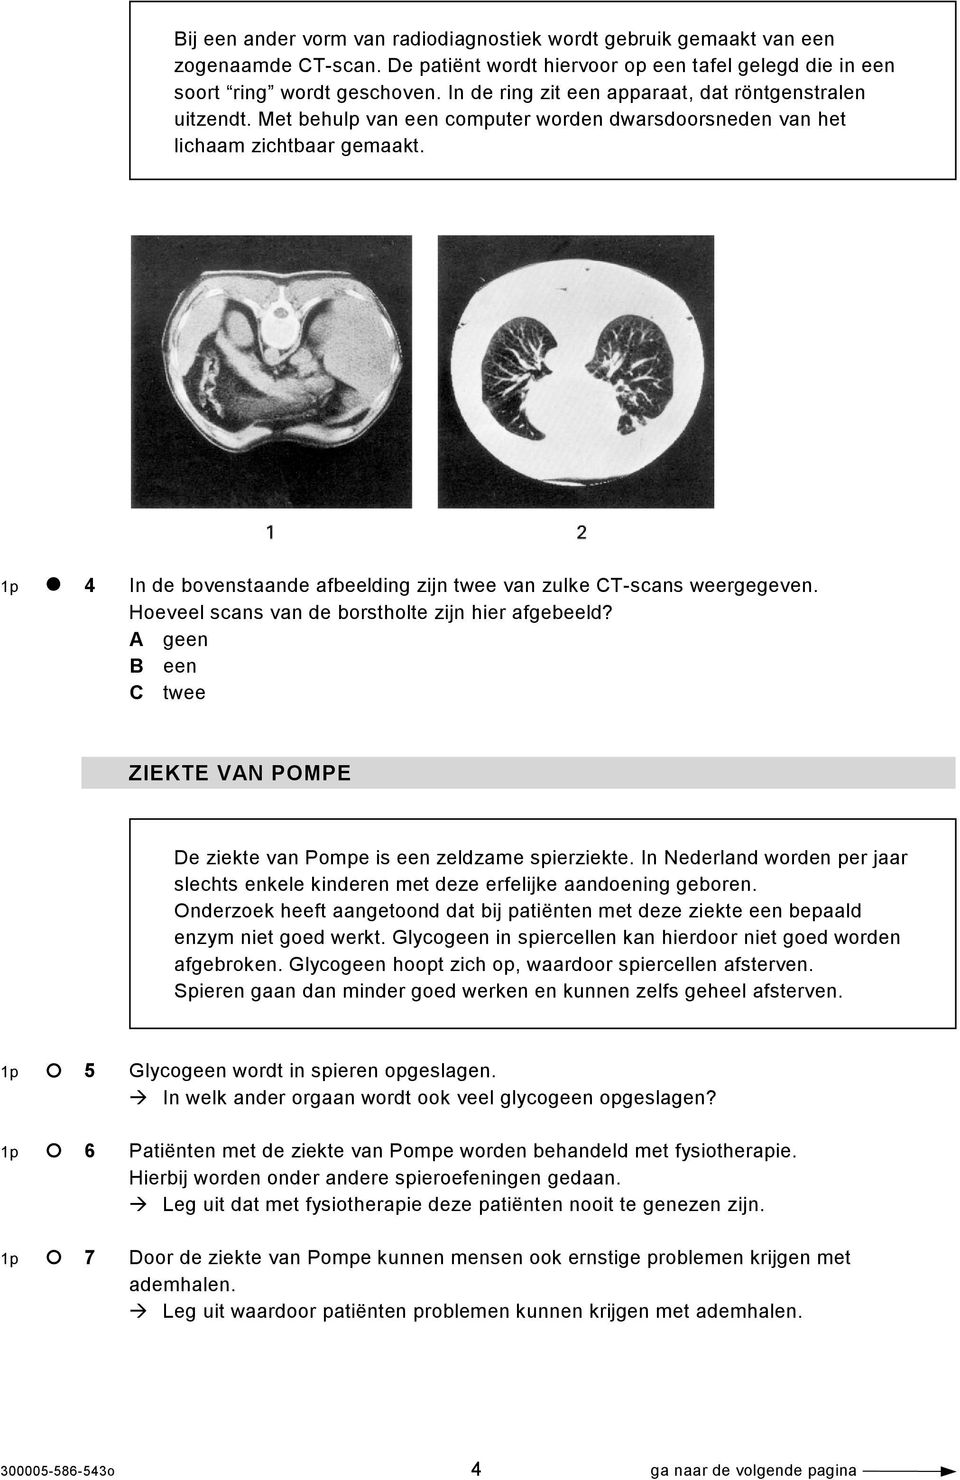 1p 4 In de bovenstaande afbeelding zijn twee van zulke CT-scans weergegeven. Hoeveel scans van de borstholte zijn hier afgebeeld?